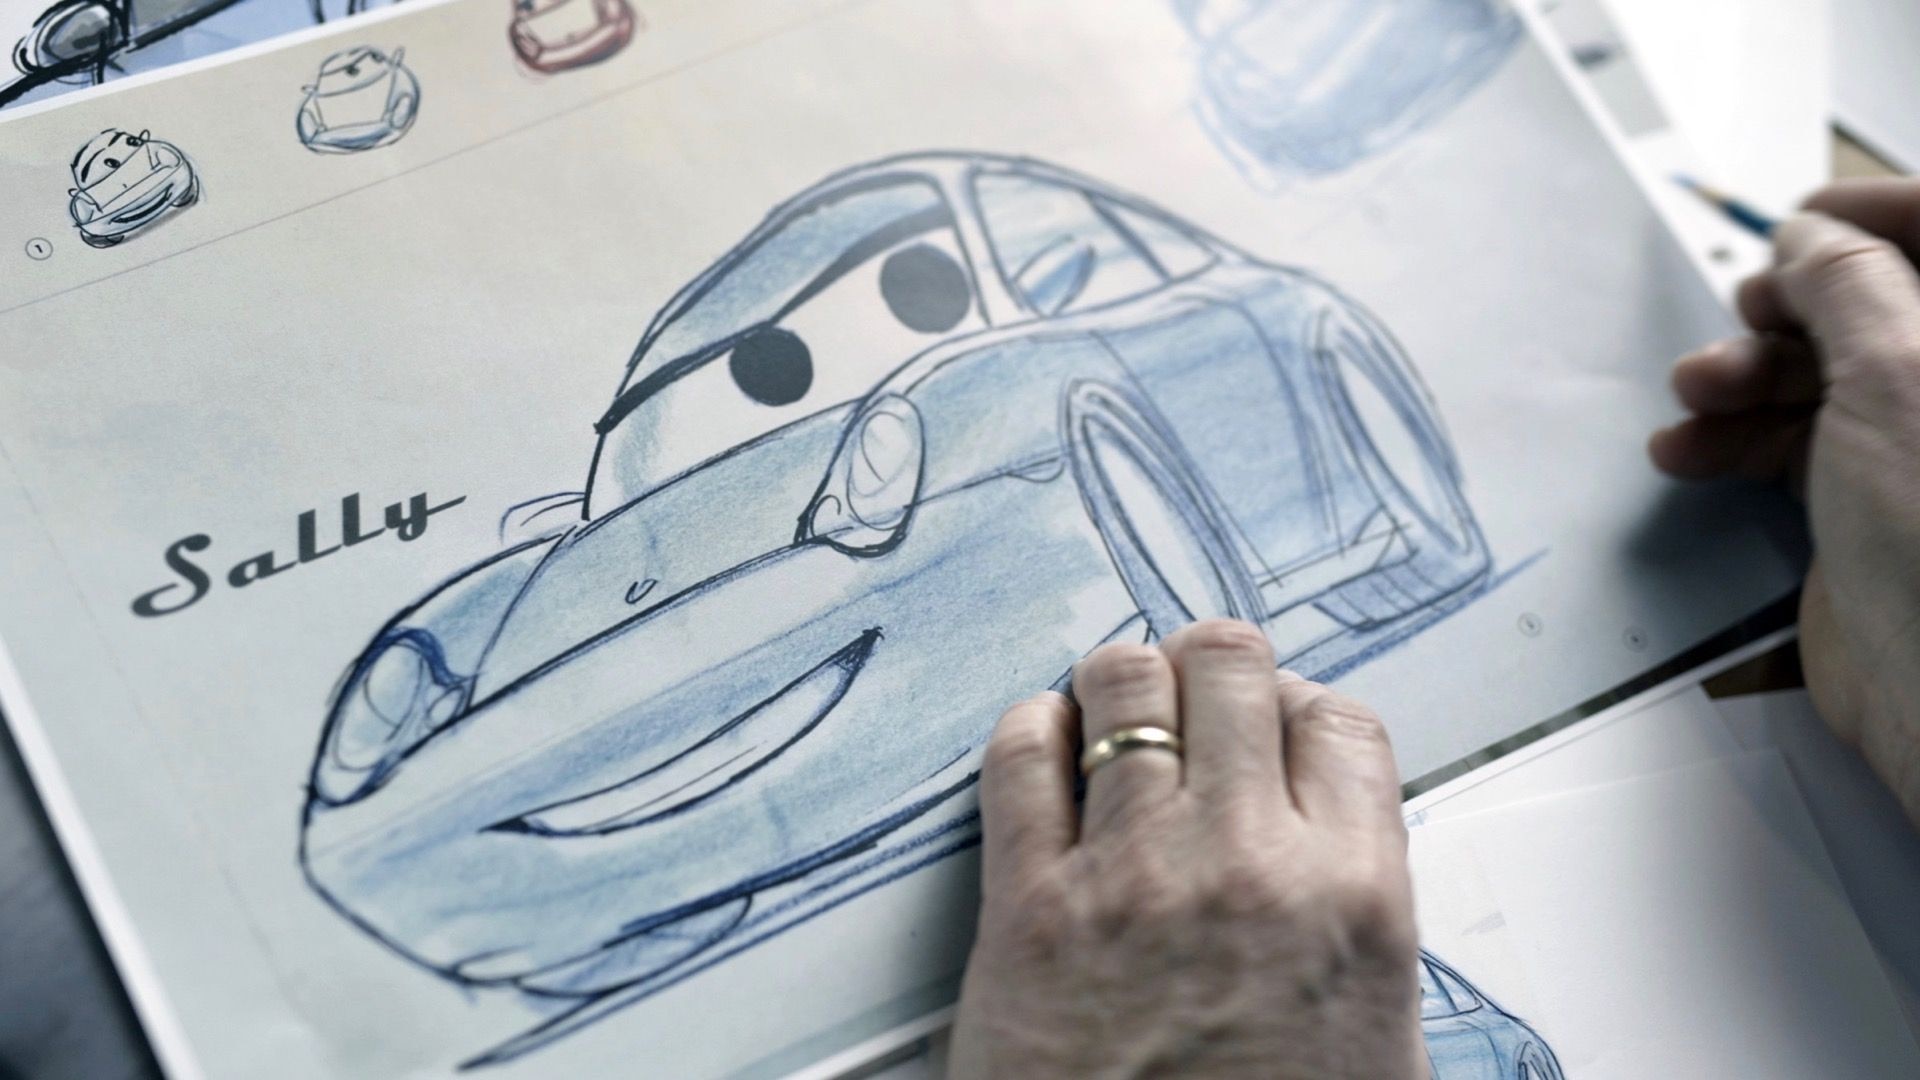 Original artwork for Sally Carrera Porsche 911 from "Cars"